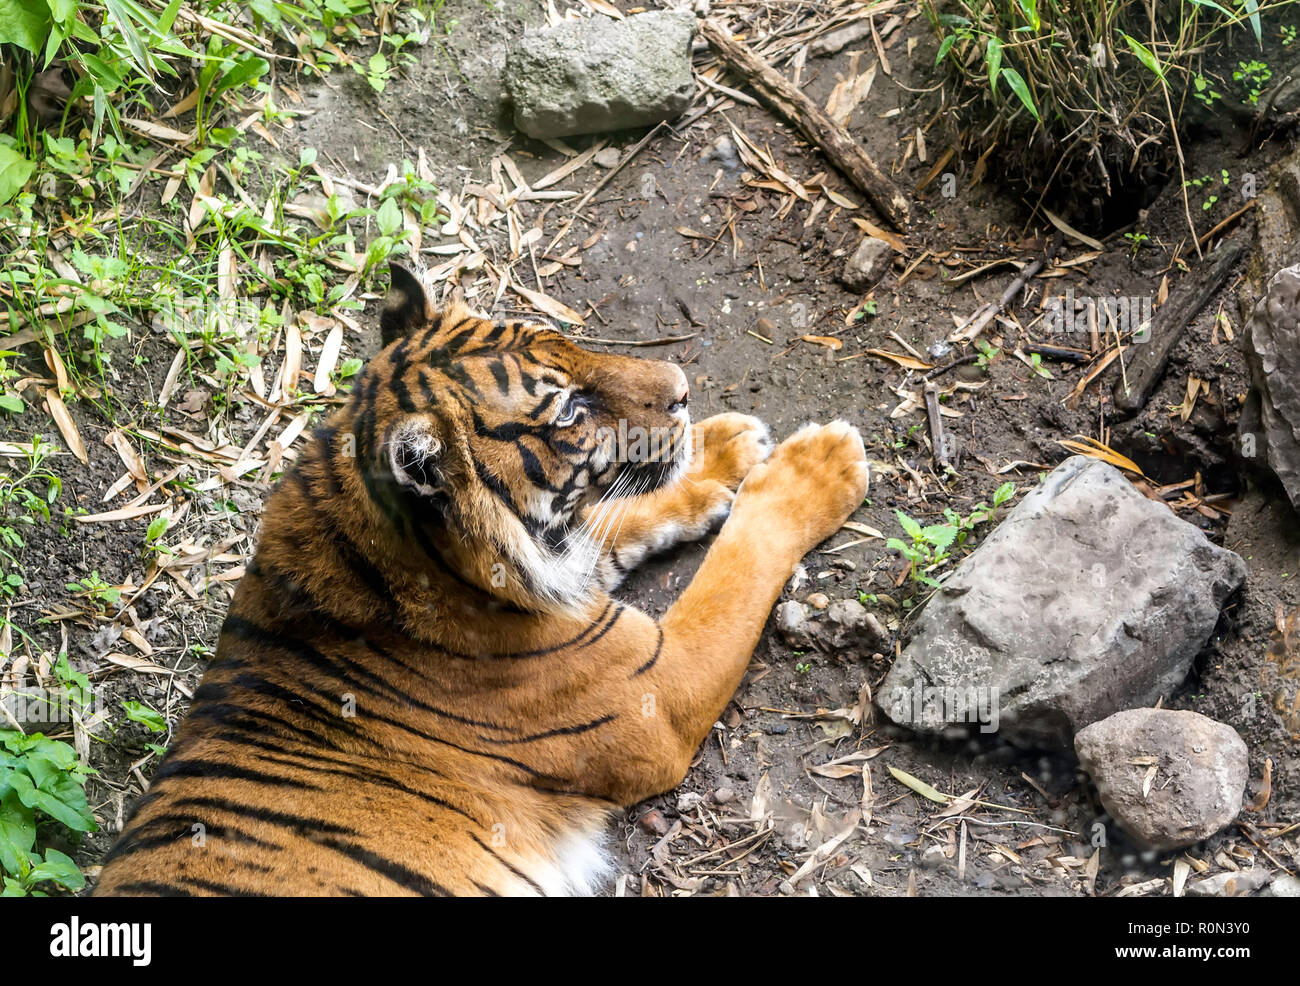 La tigre di Sumatra (Panthera tigris sondaica) giacente serenamente sul terreno. Foto Stock